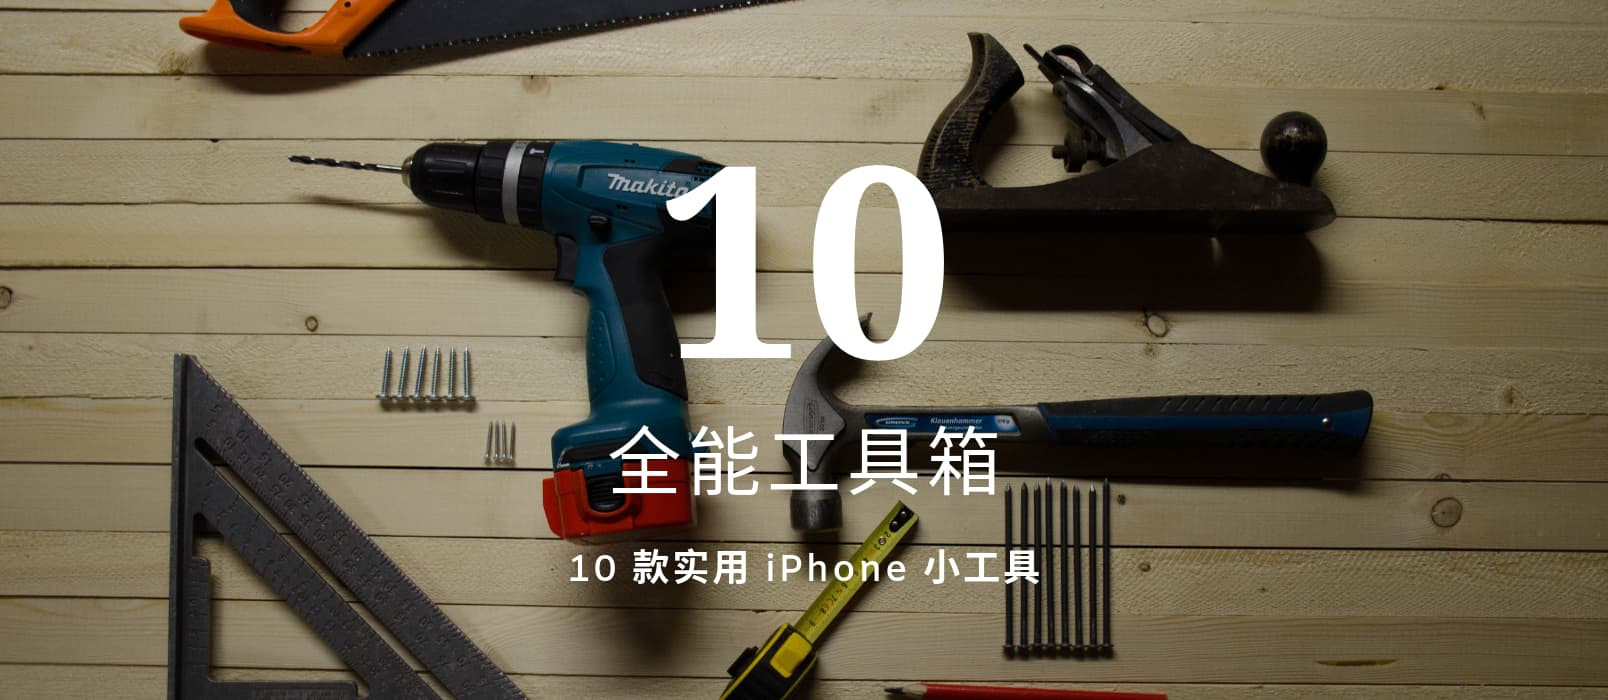 全能工具箱 - 拥有 10 款小工具的 iPhone 工具箱 1